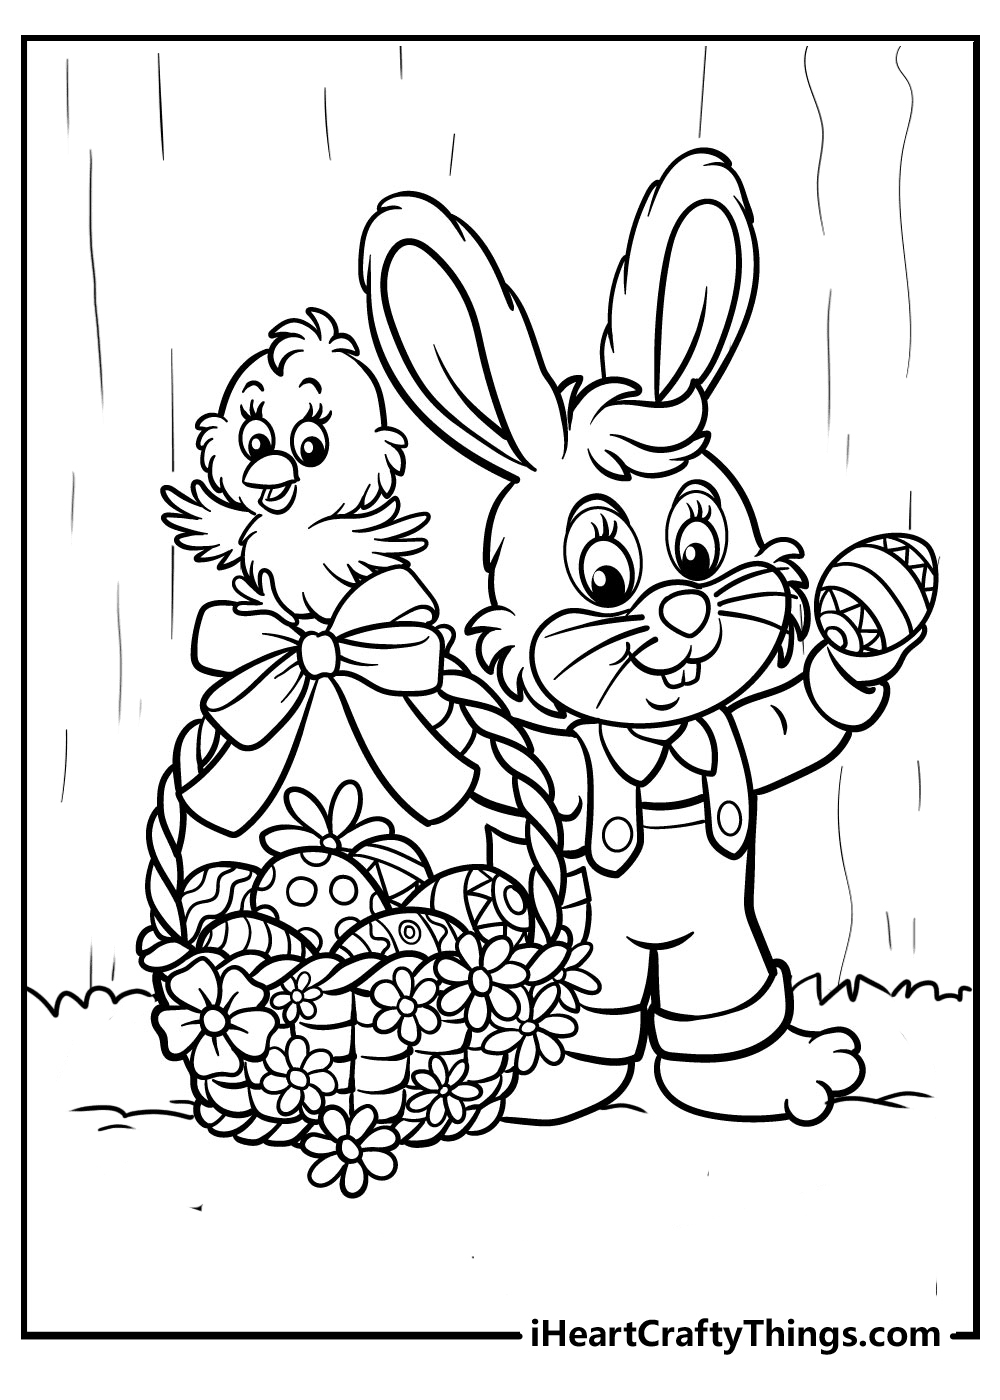 一只复活节兔子带着篮子和小鸡